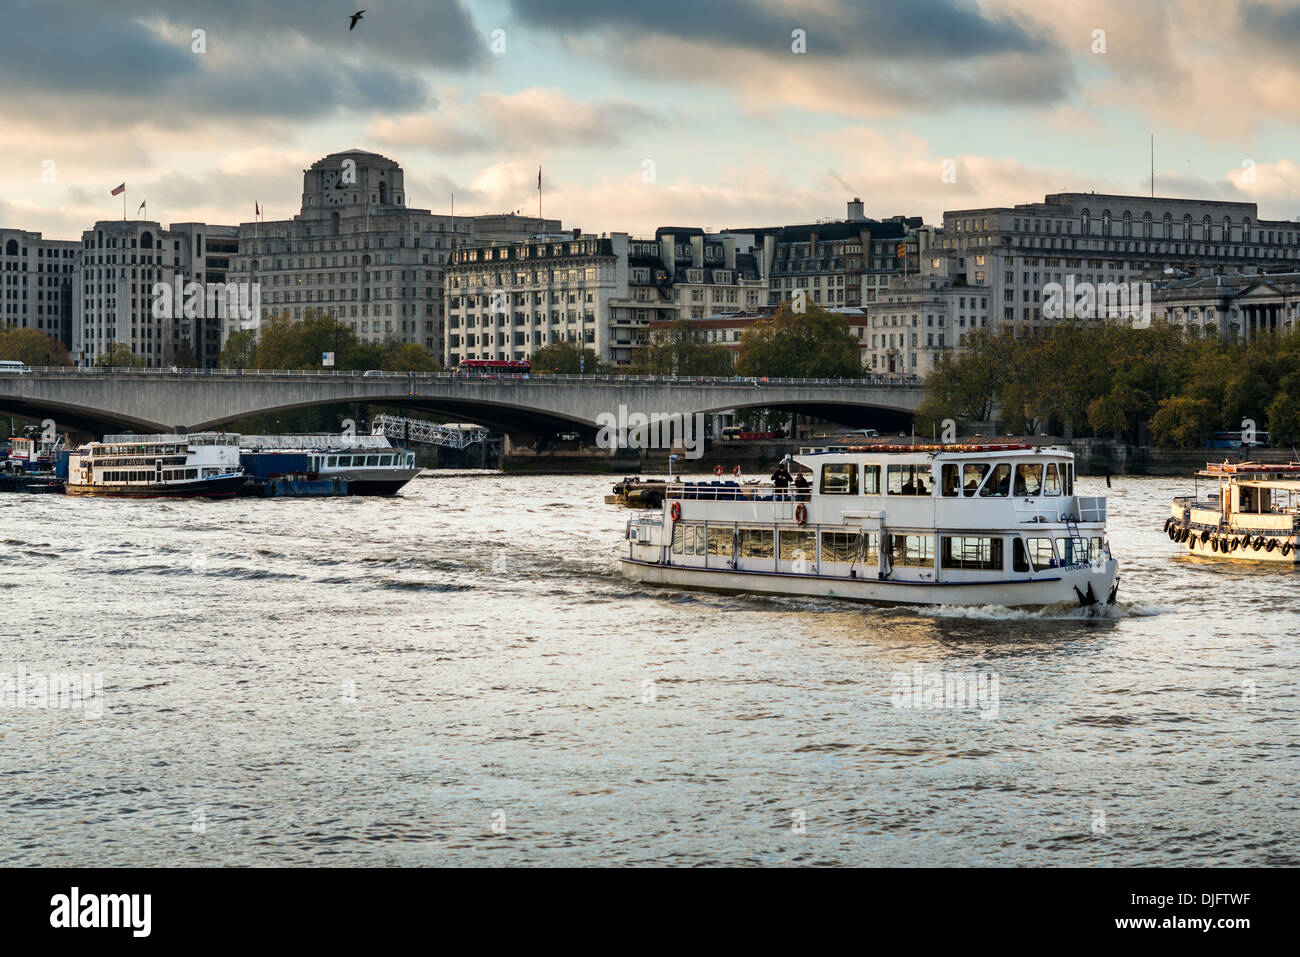 Thames Vergnügen Kreuzfahrten fahren Sie unter Waterloo Brücke; Shell - Mex Haus Gebäude bildet die Kulisse Stockfoto